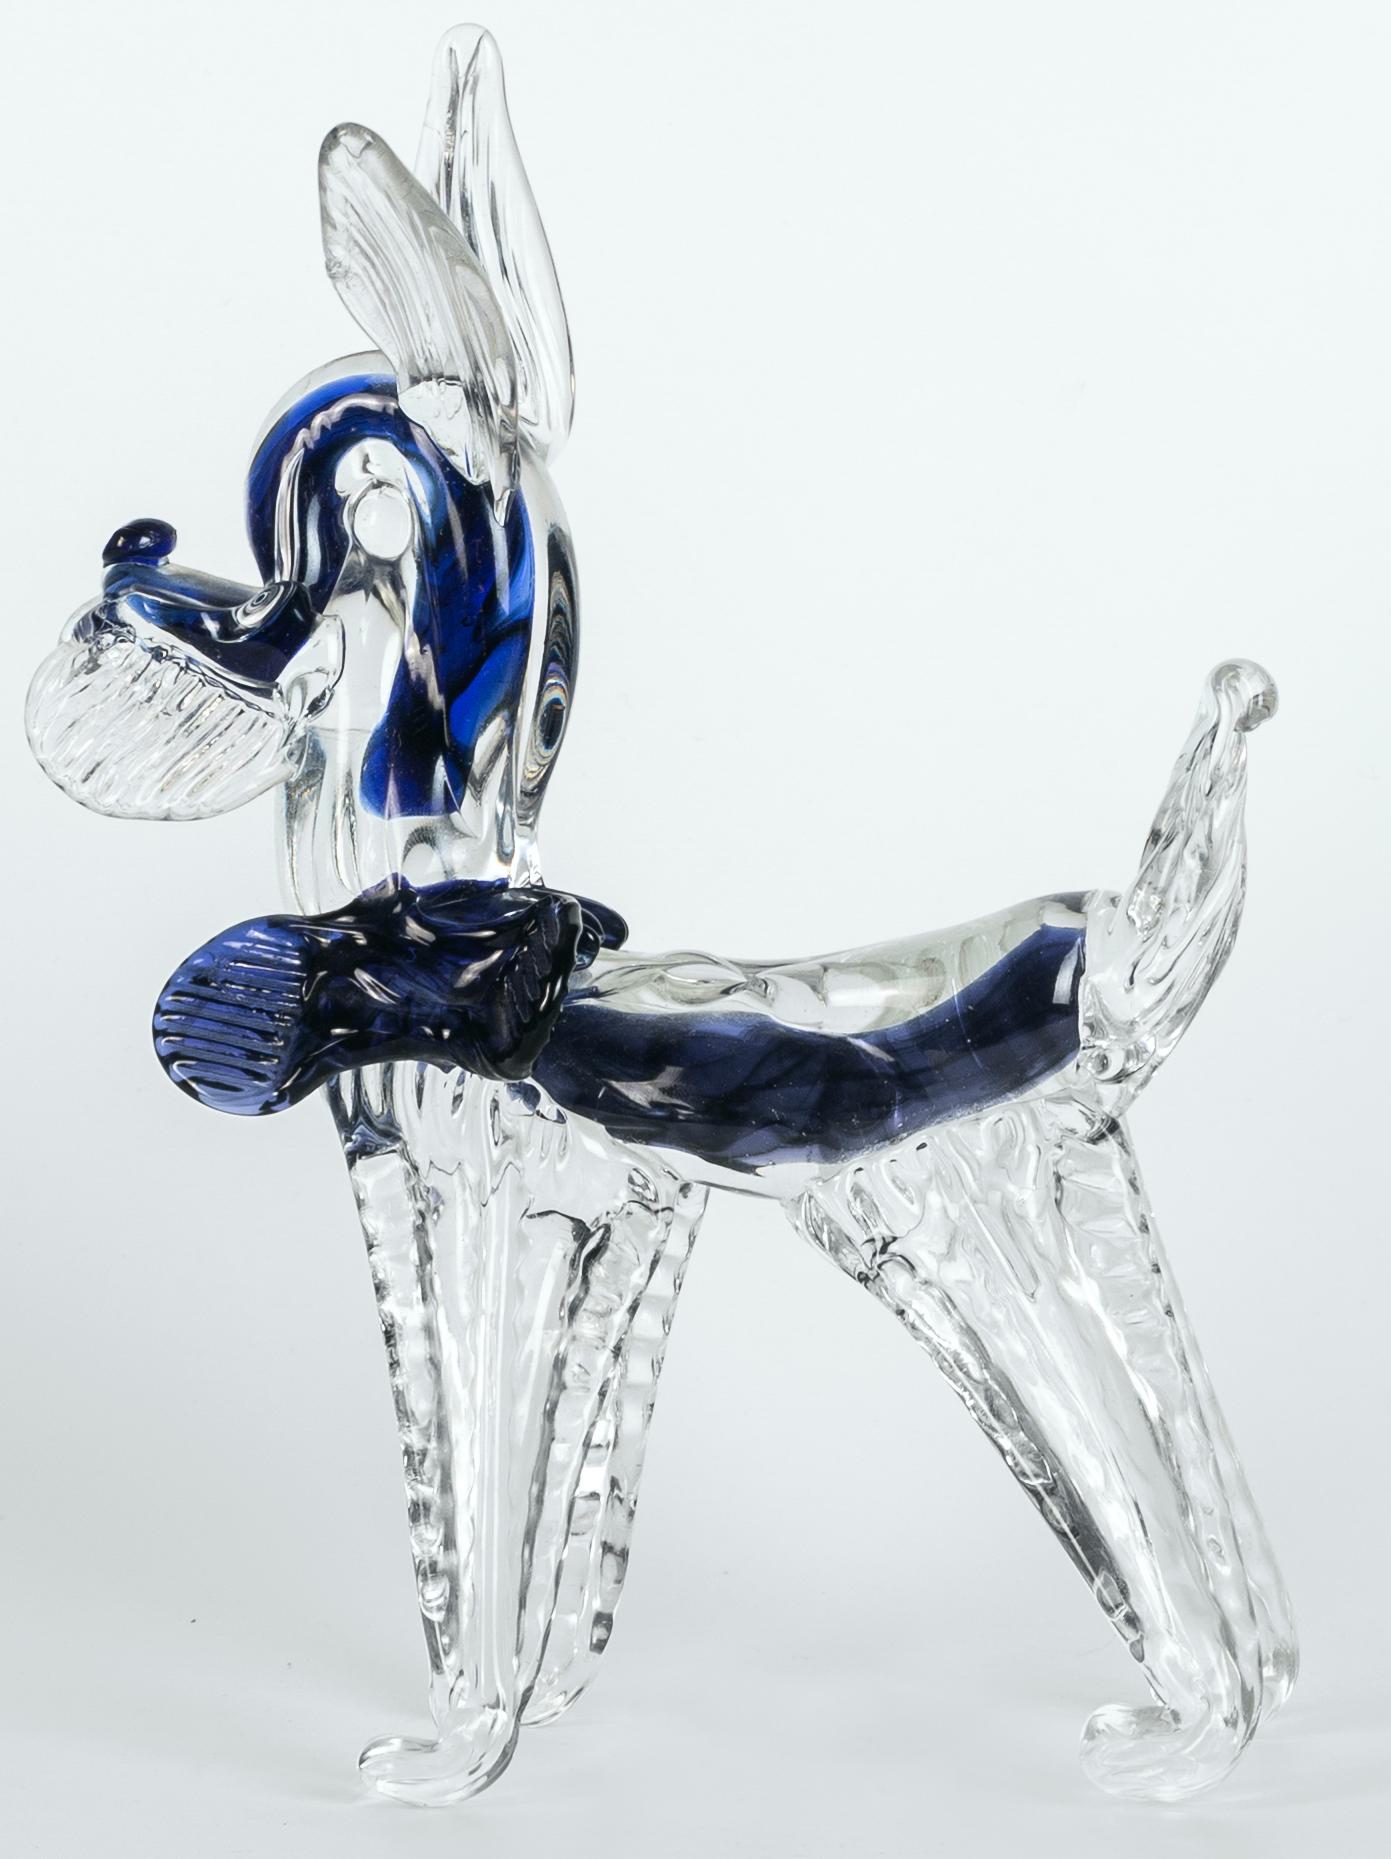 Der Hund aus Murano-Glas ist ein wunderschönes Dekorationsobjekt aus Glas, das in den 1980er Jahren in Murano hergestellt wurde. 

Dieses Objekt gehört zu der exklusiven und schönen Sammlung von Murano-Glastieren, die von Murano-Handwerkern in der